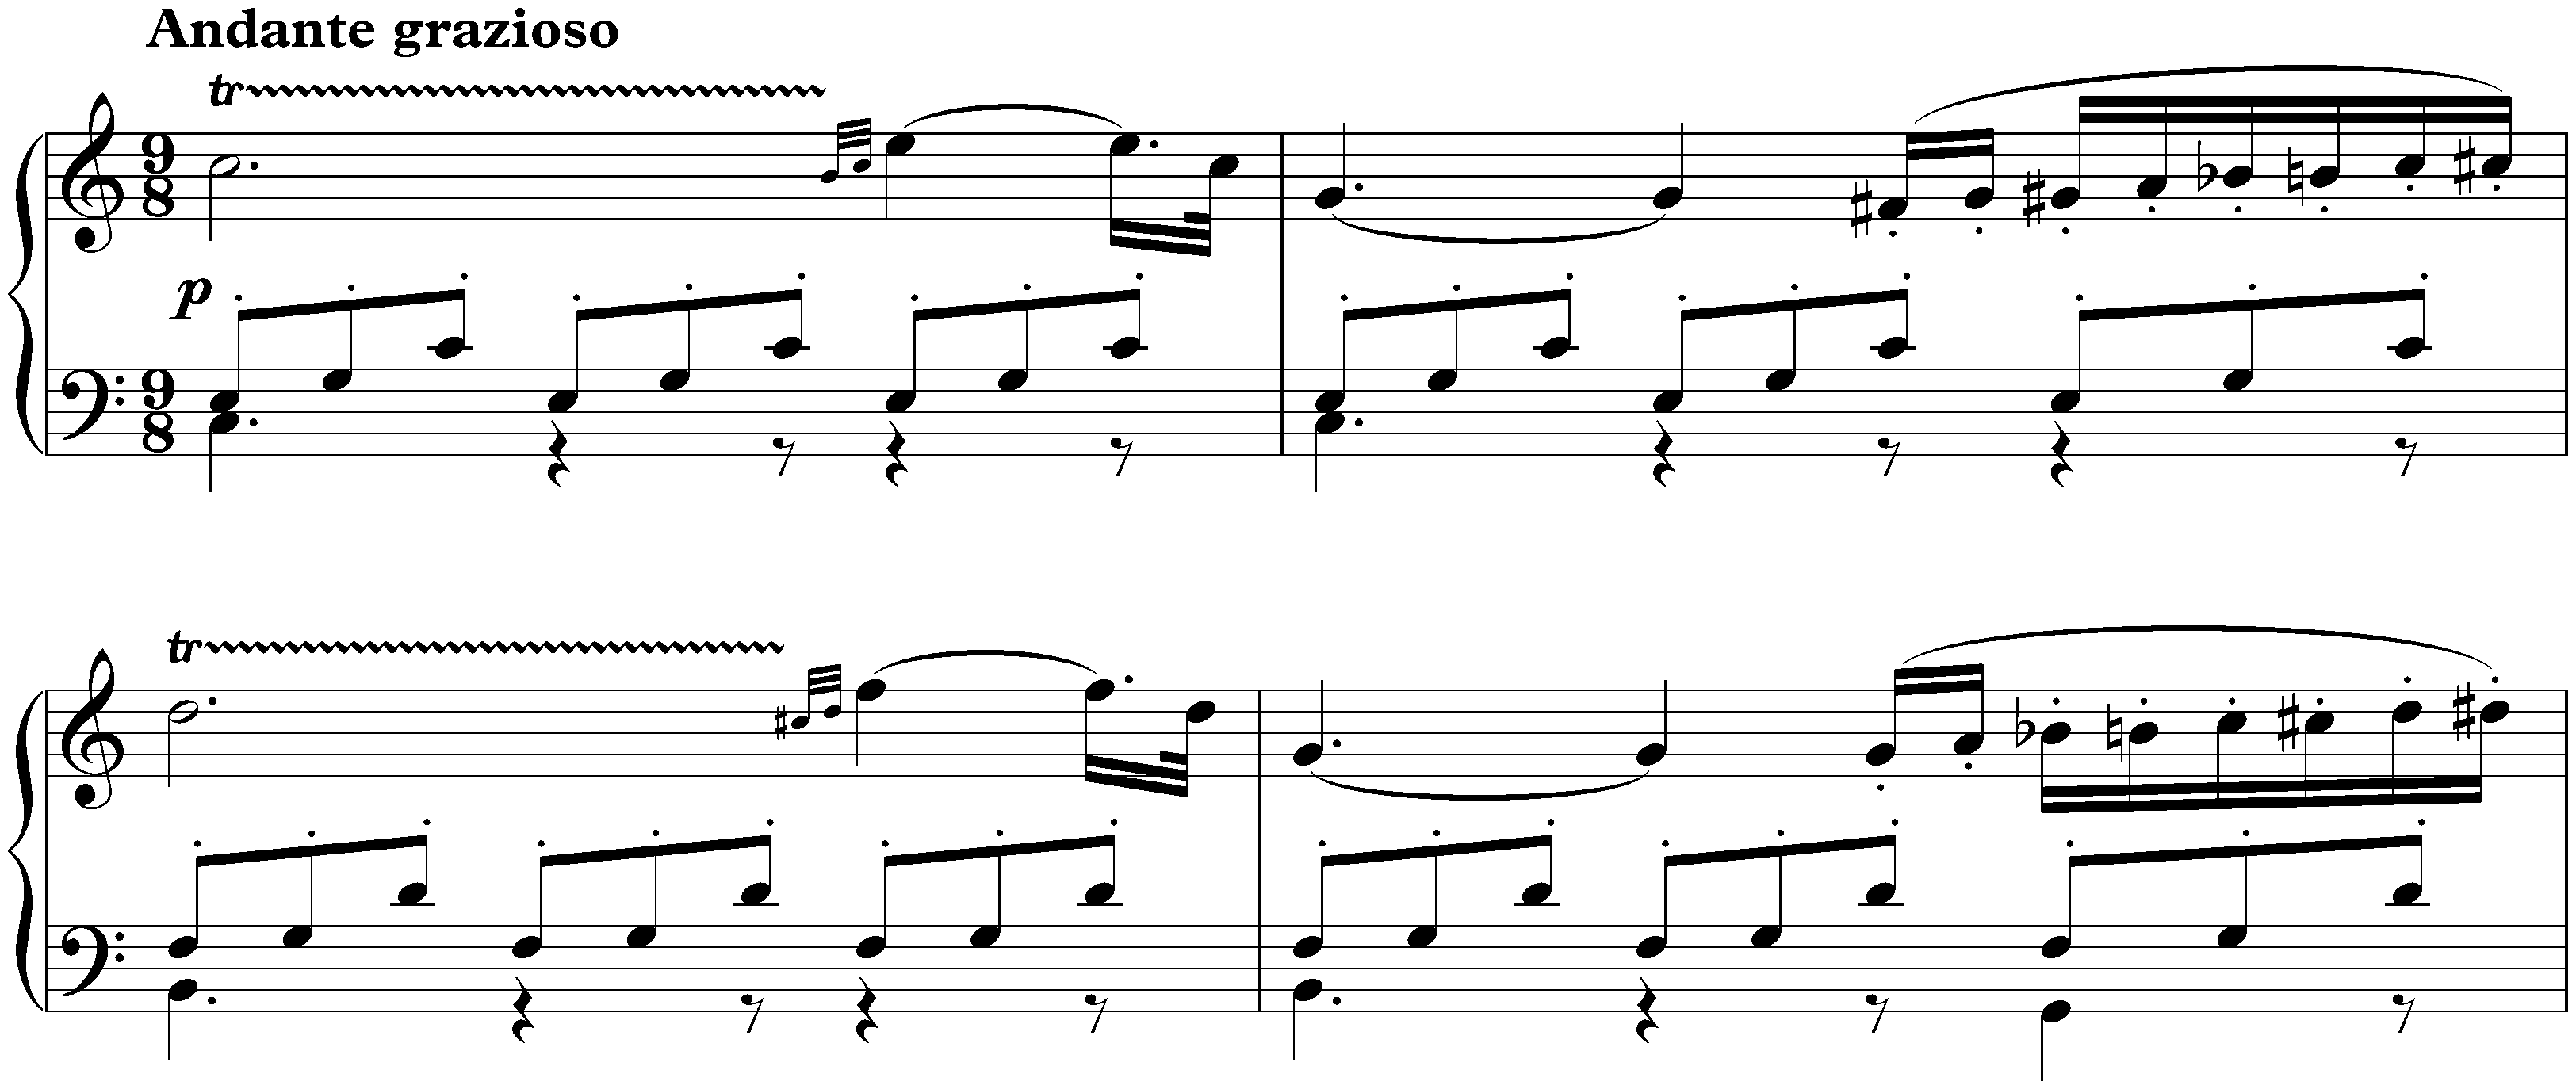 Sonata no. 16 in G major, op. 31 no. 1; 2. Adagio grazioso